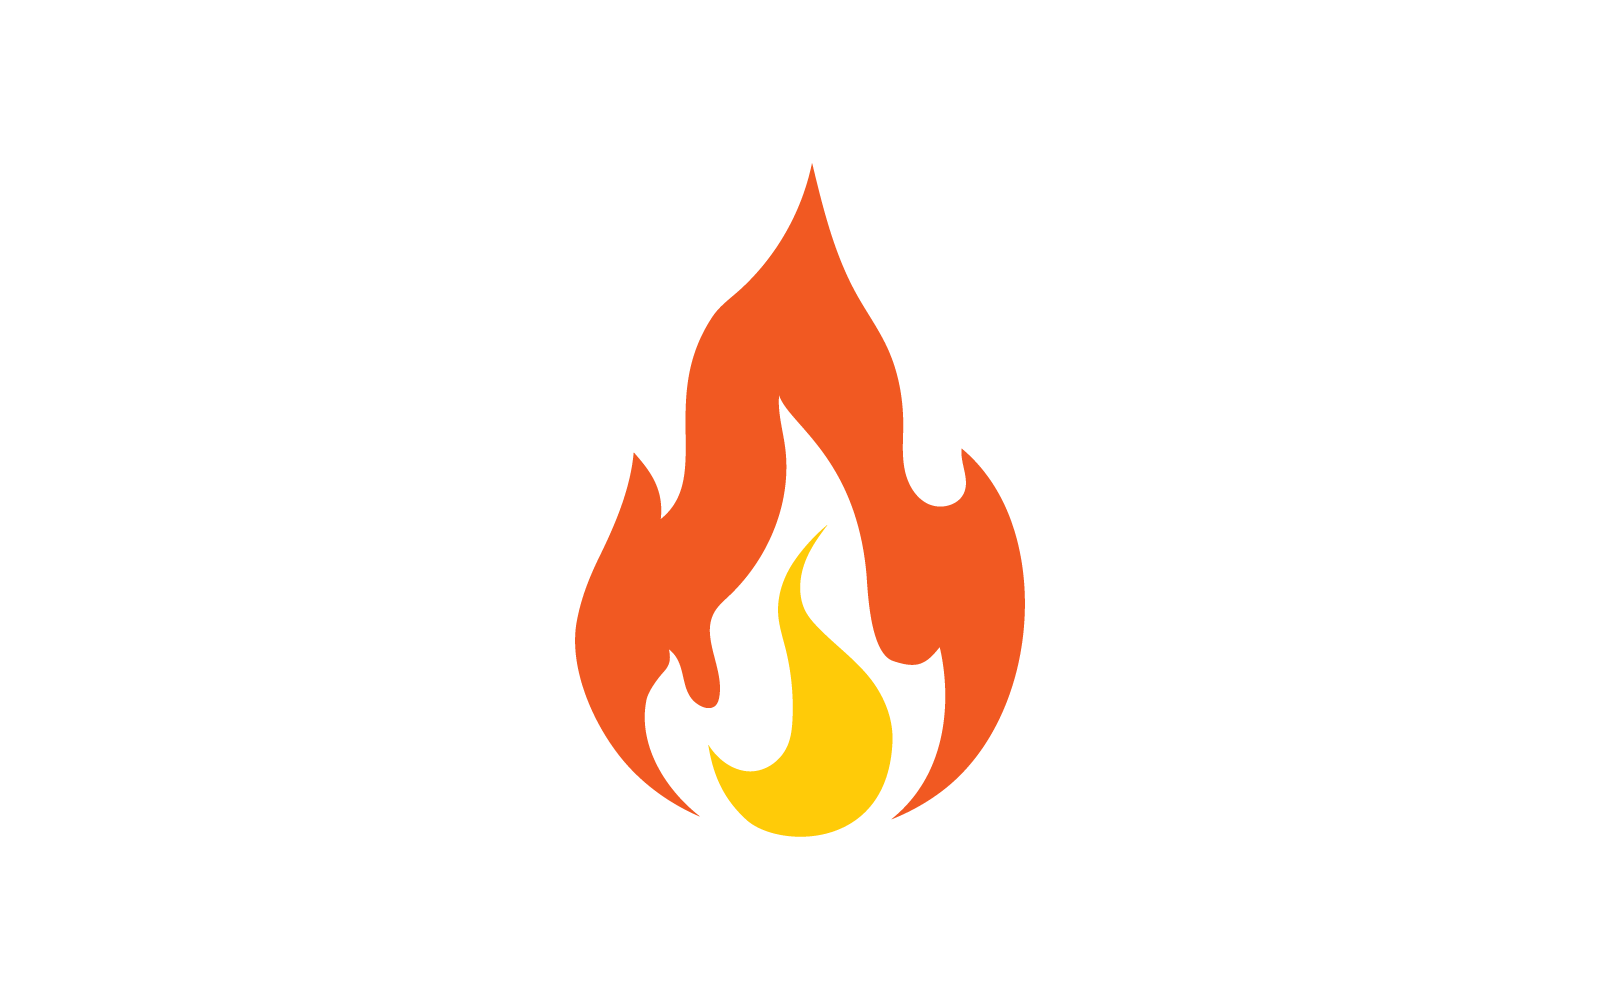 Fire flame Logo vector, Oil, gas and energy logo flat design concept Logo Template